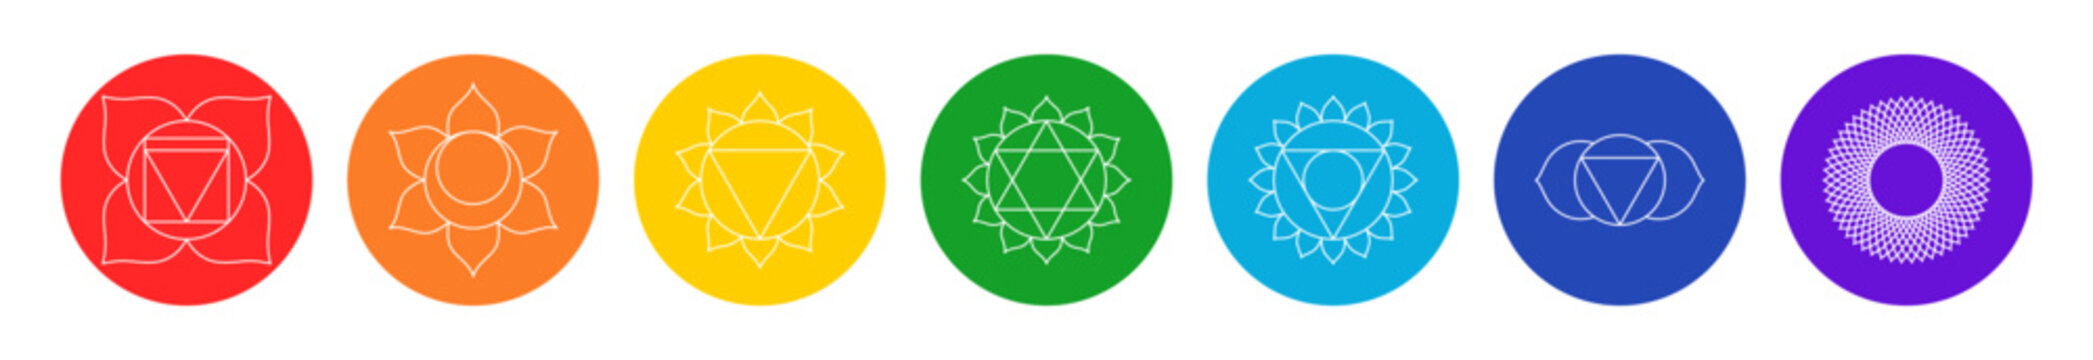 Chakra set, line art symbols. Meditation, spirituality, energy, healing vector illustration icon set on white background